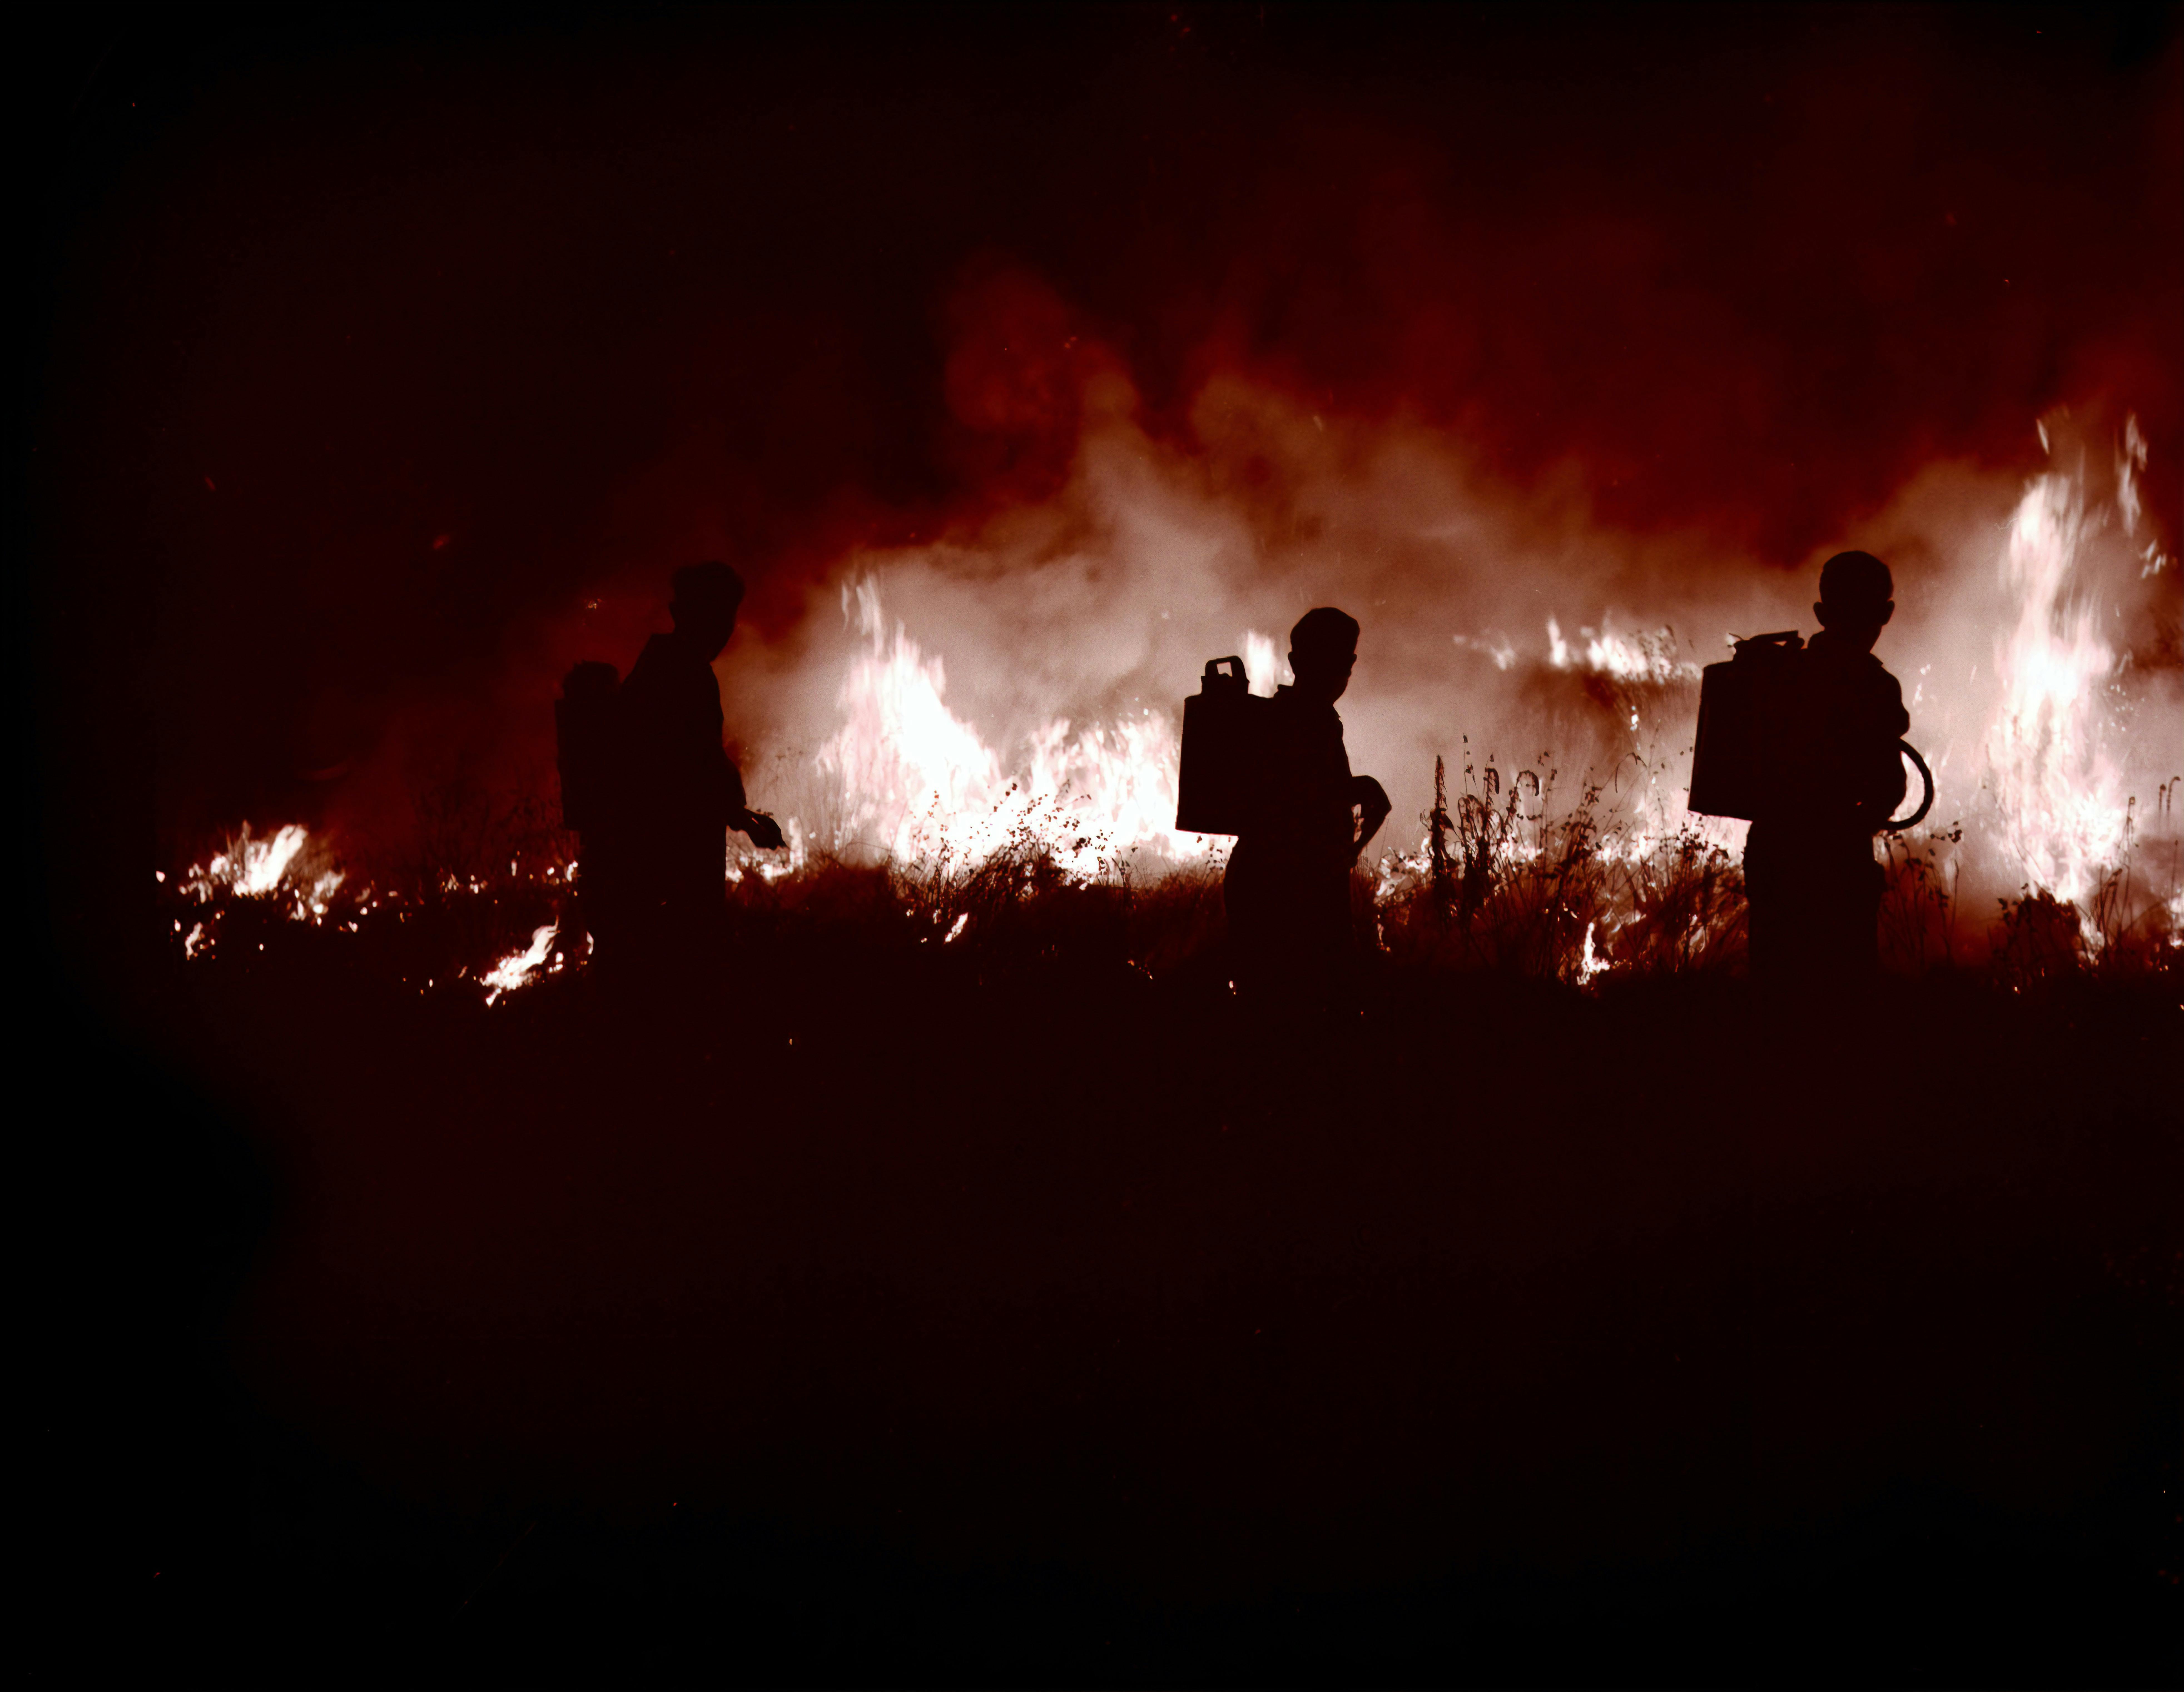 Firefighters fighting a blaze in the dark